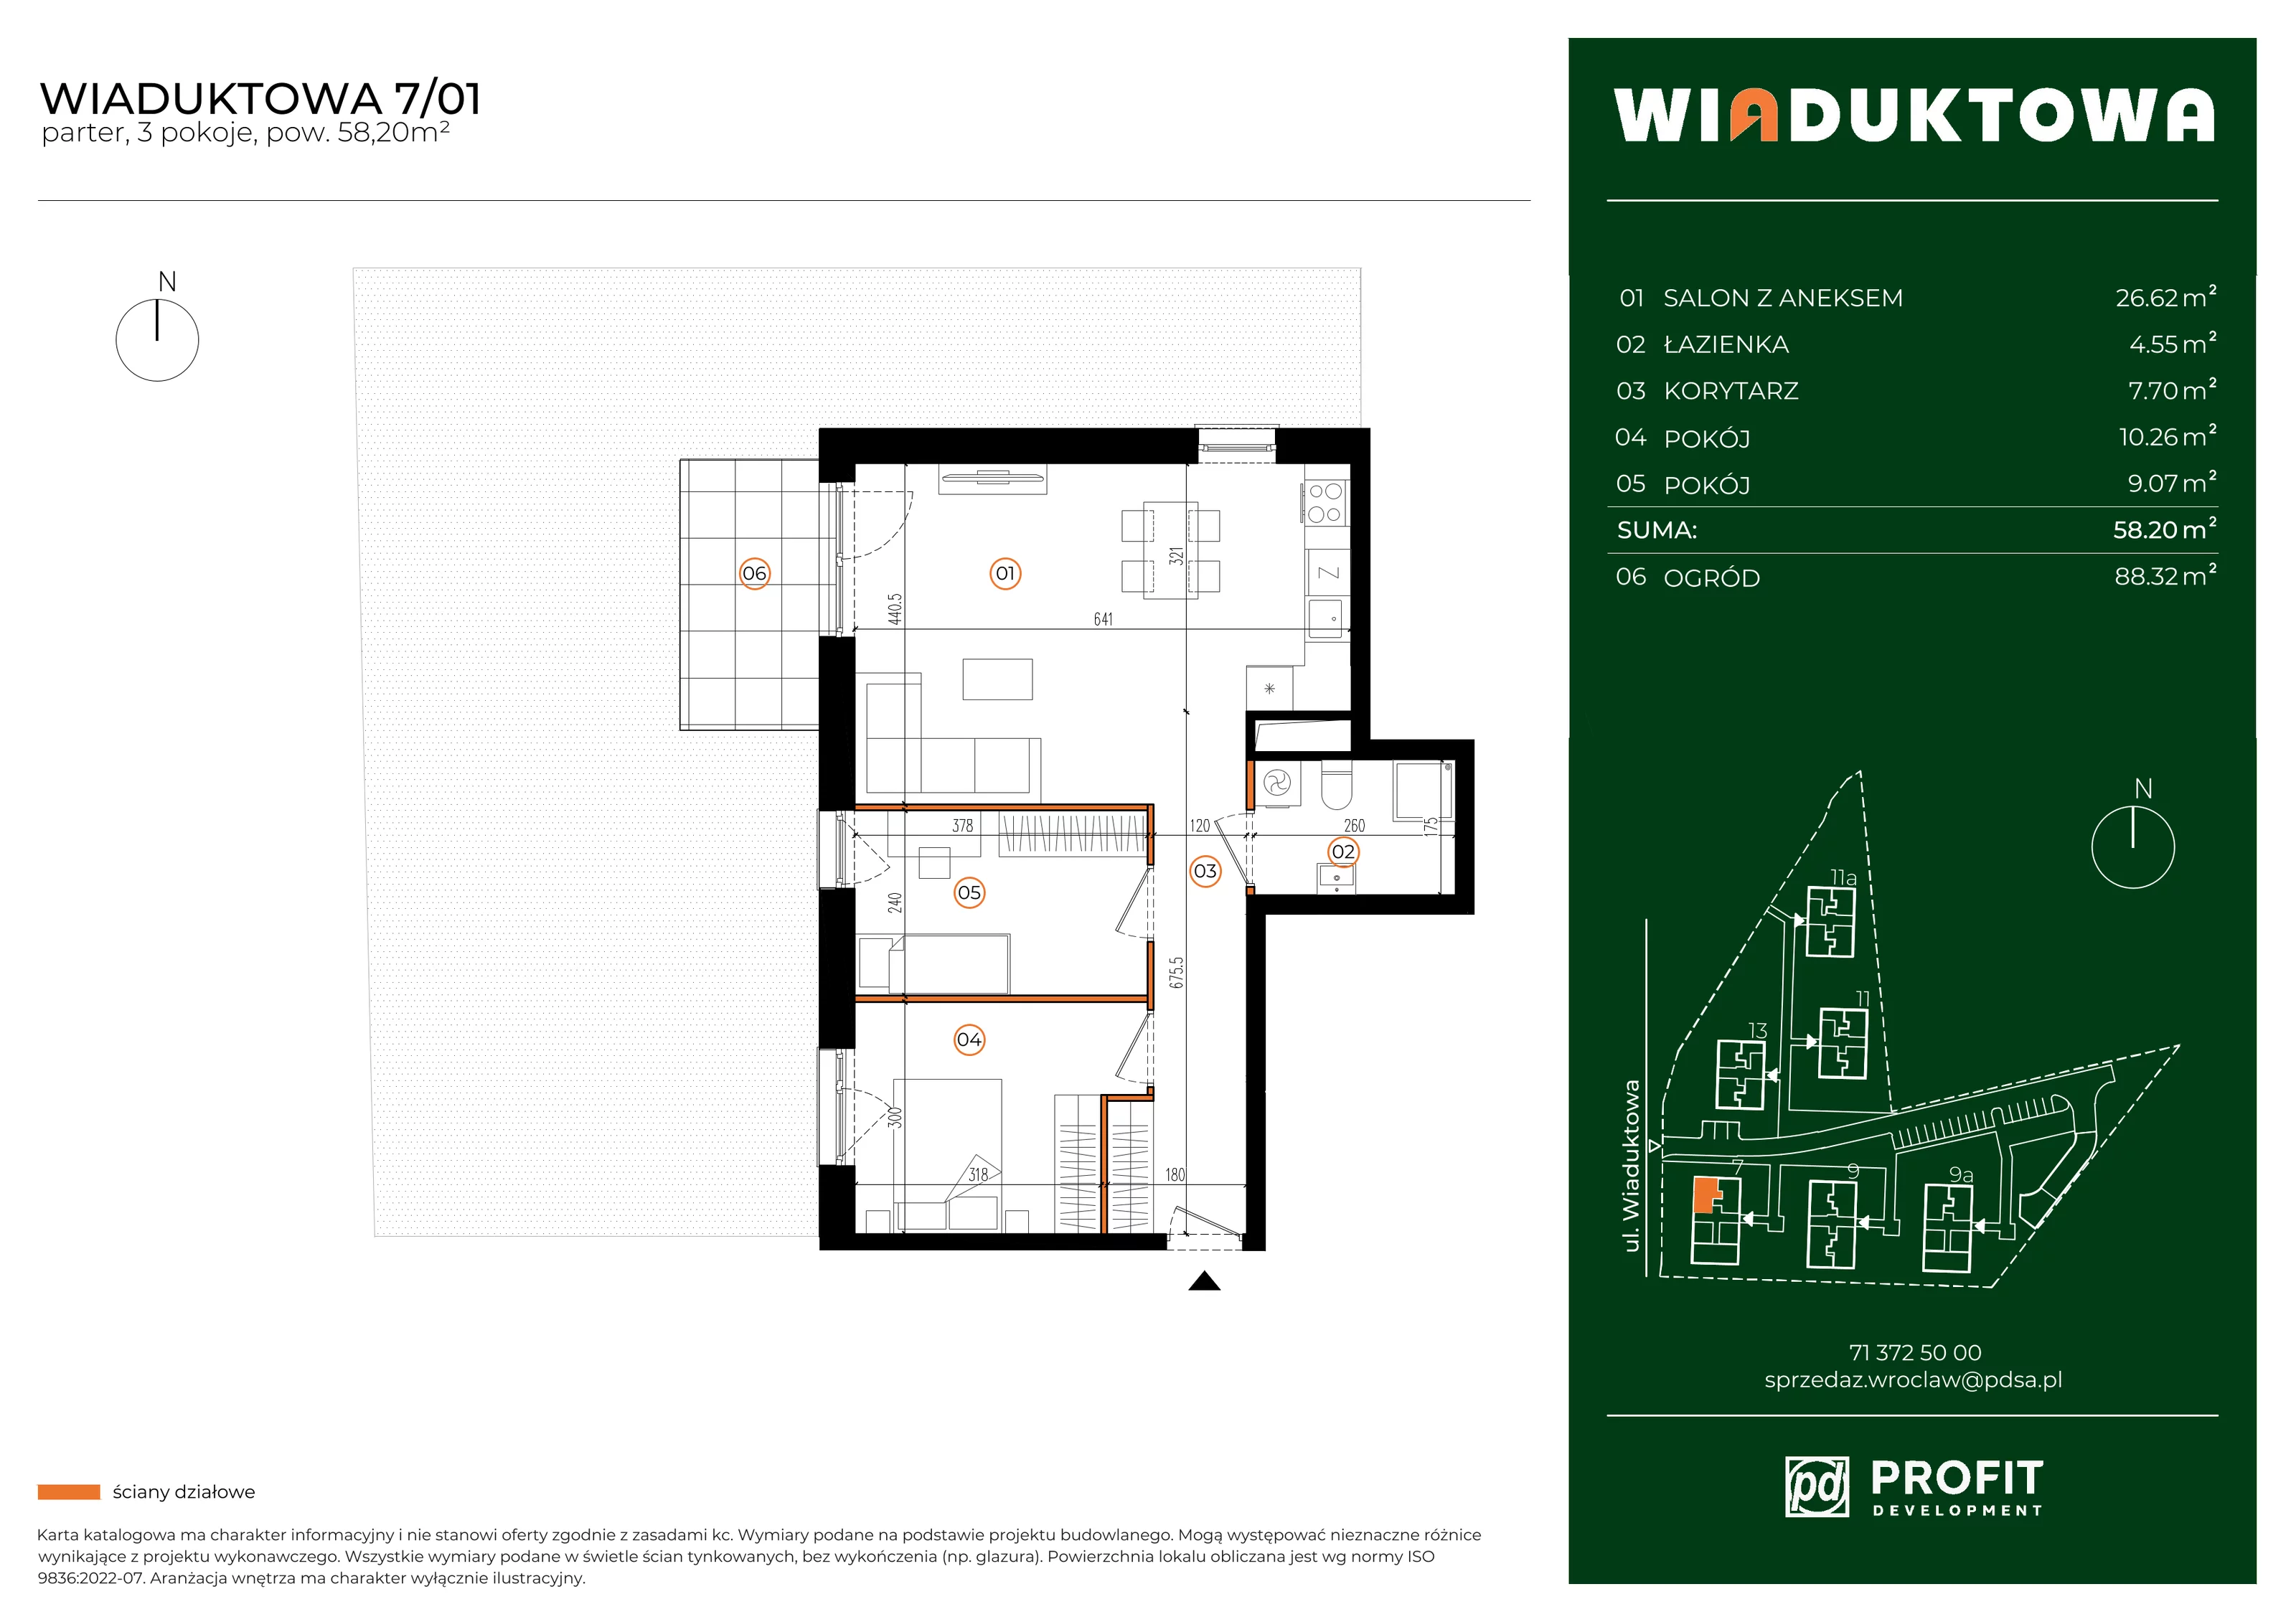 Mieszkanie 58,20 m², parter, oferta nr WI/7/01, Wiaduktowa, Wrocław, Krzyki-Partynice, Krzyki, ul. Wiaduktowa